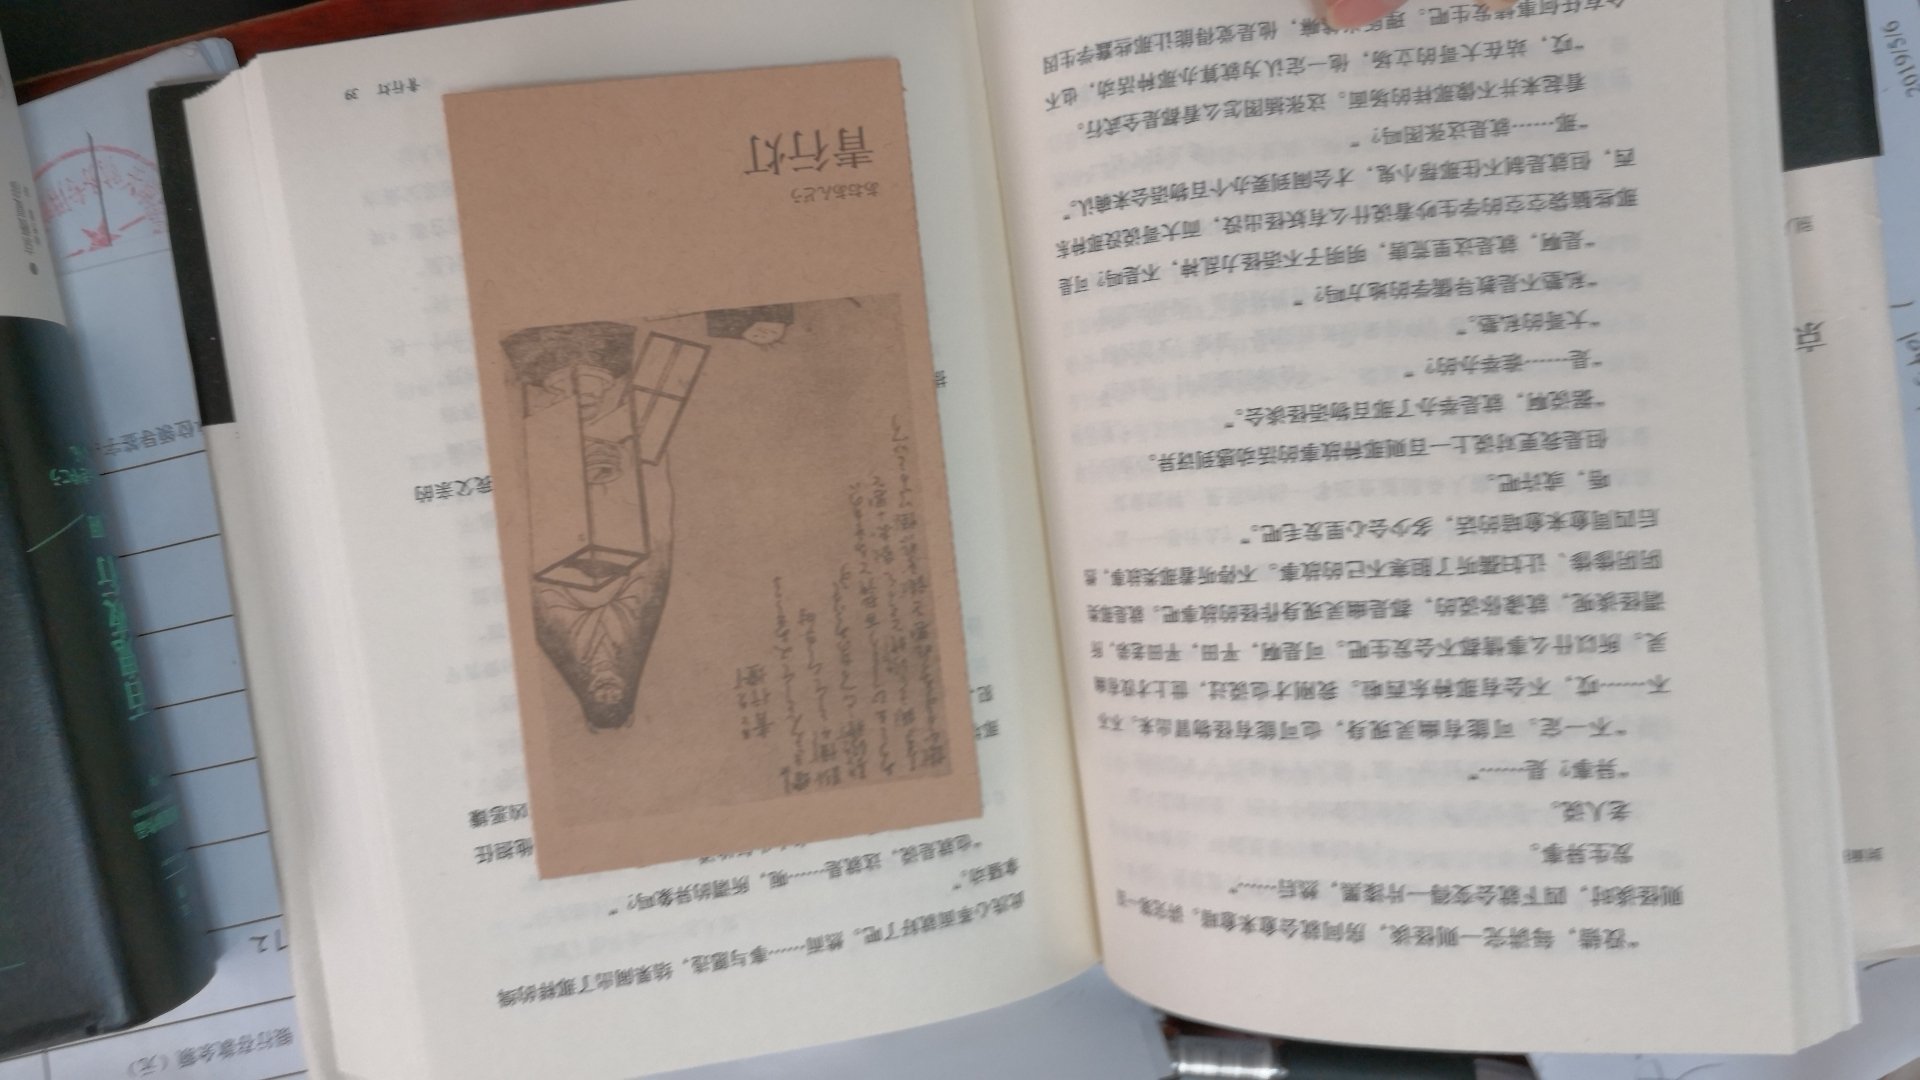 很喜欢京极夏彦的小说，以前看过百物语系列，这次开始百鬼夜行系列，书包装很好，字体排版很舒服，喜欢。